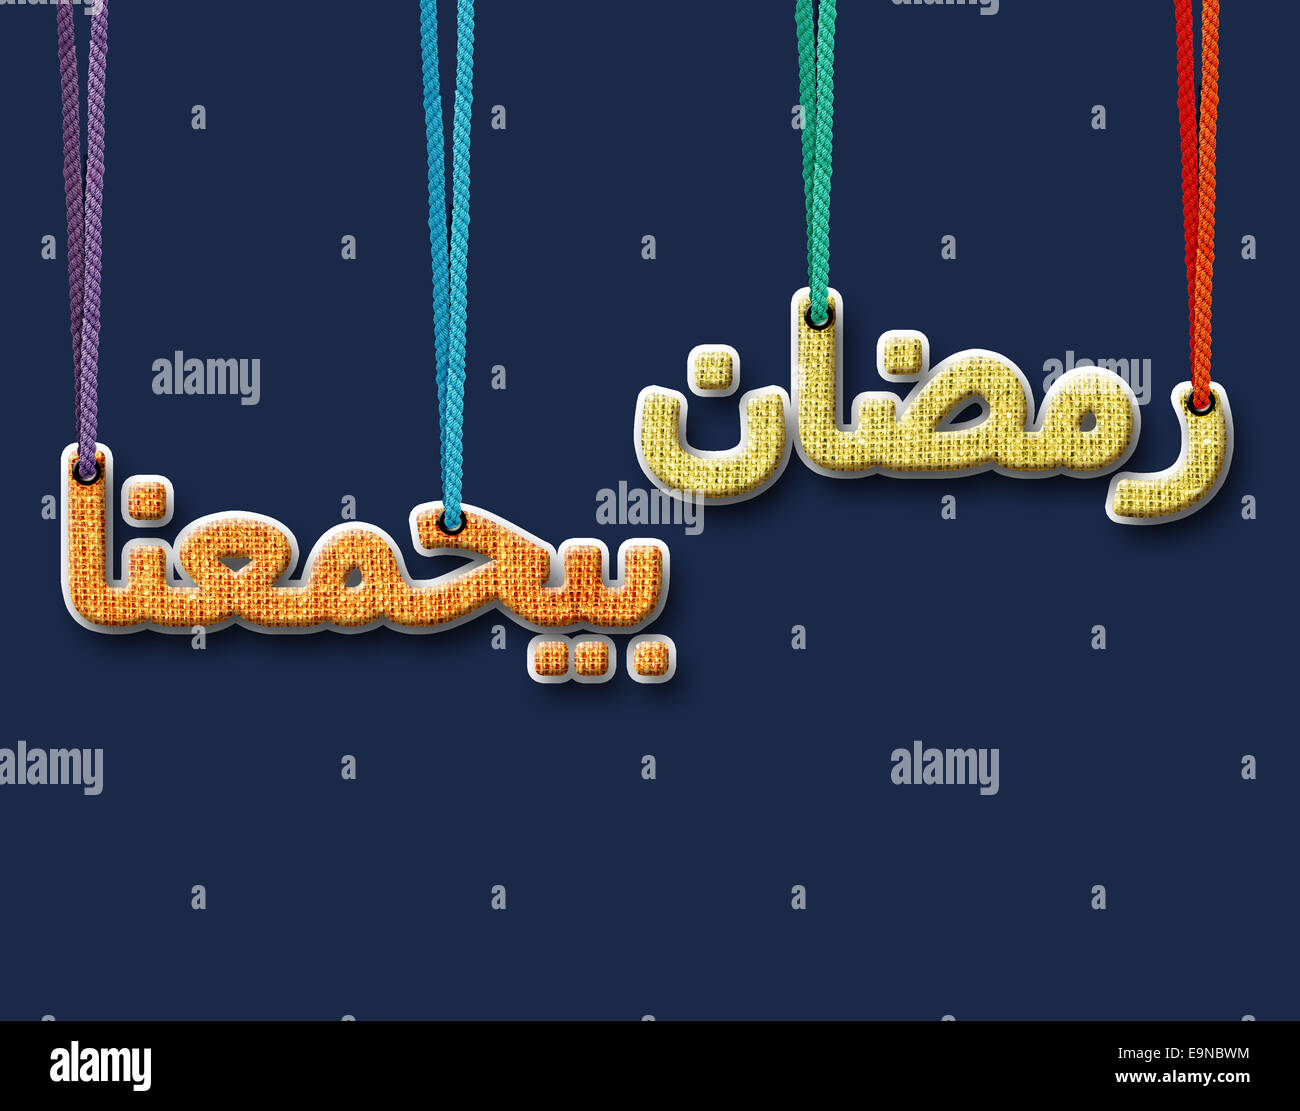 Gratulation: Eid al-Fitr Mubarak! Arabische Süßigkeiten auf einer hölzernen  Oberfläche. Kerzenständer, Nacht Licht und Nacht blauer Himmel mit Halbmond  im Hinterg Stockfotografie - Alamy